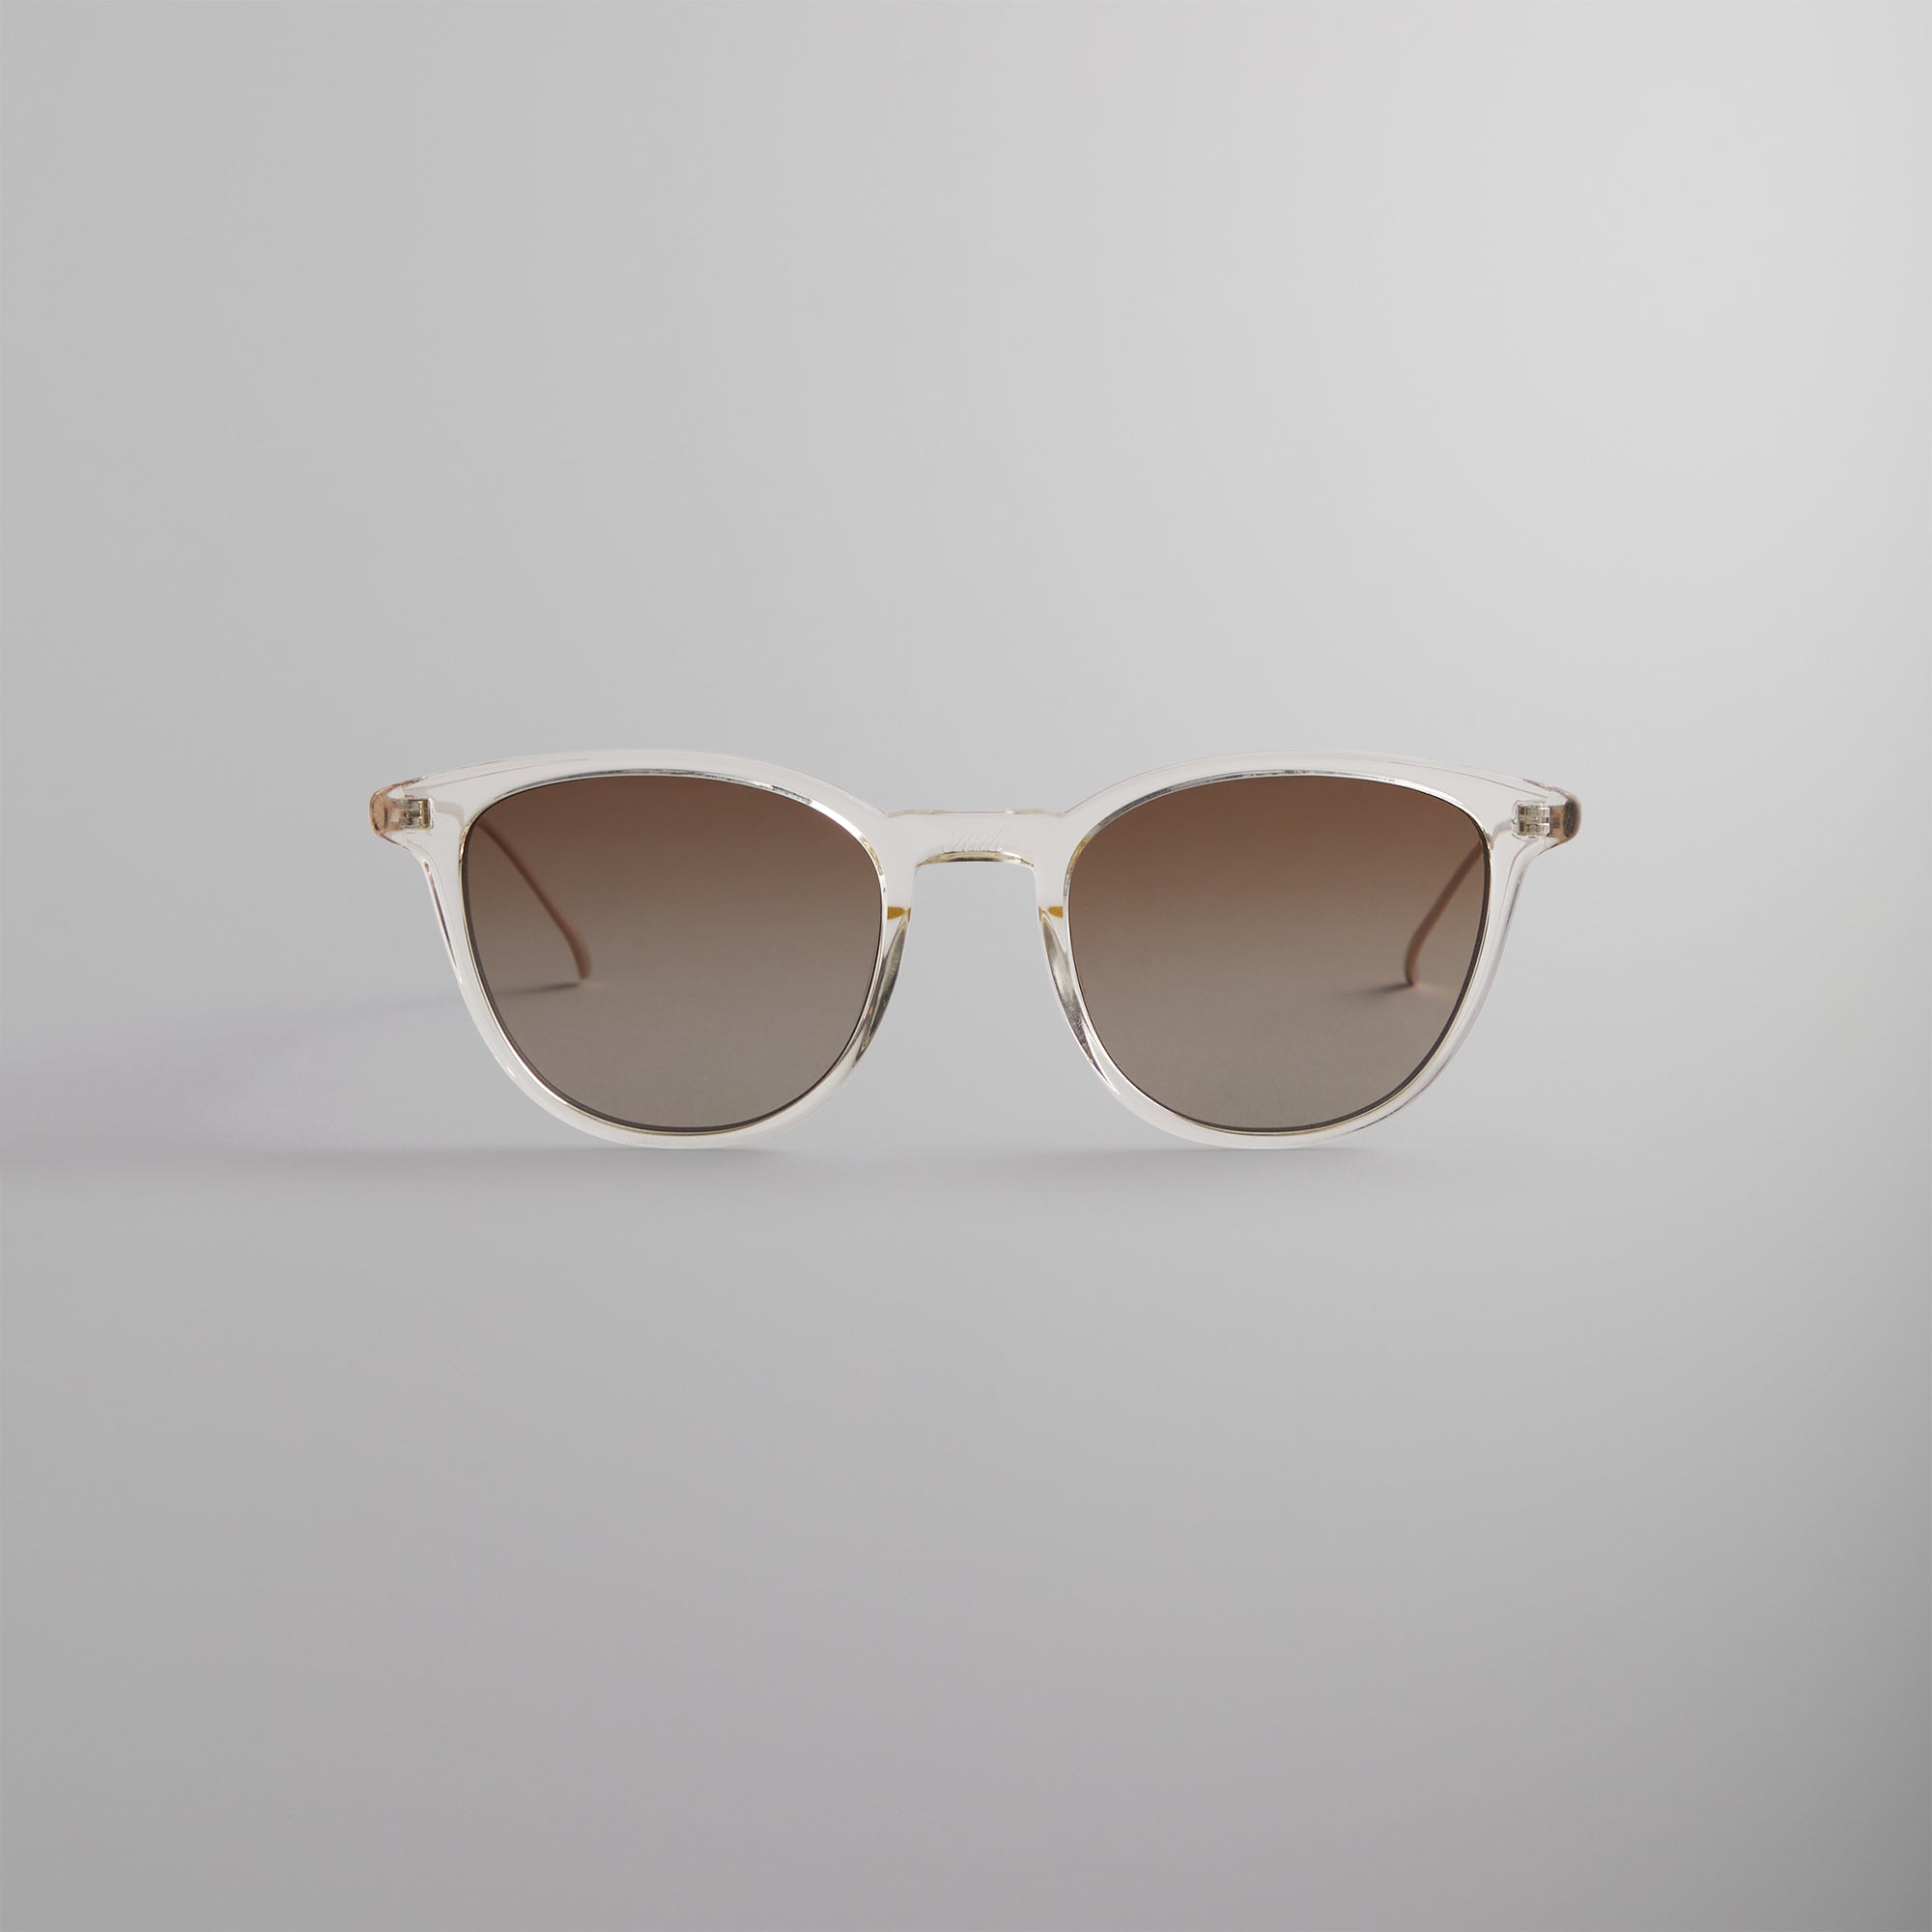 Kith for Modo Georgica Sunglasses - Crystal / Gold / Clear – Kith ...